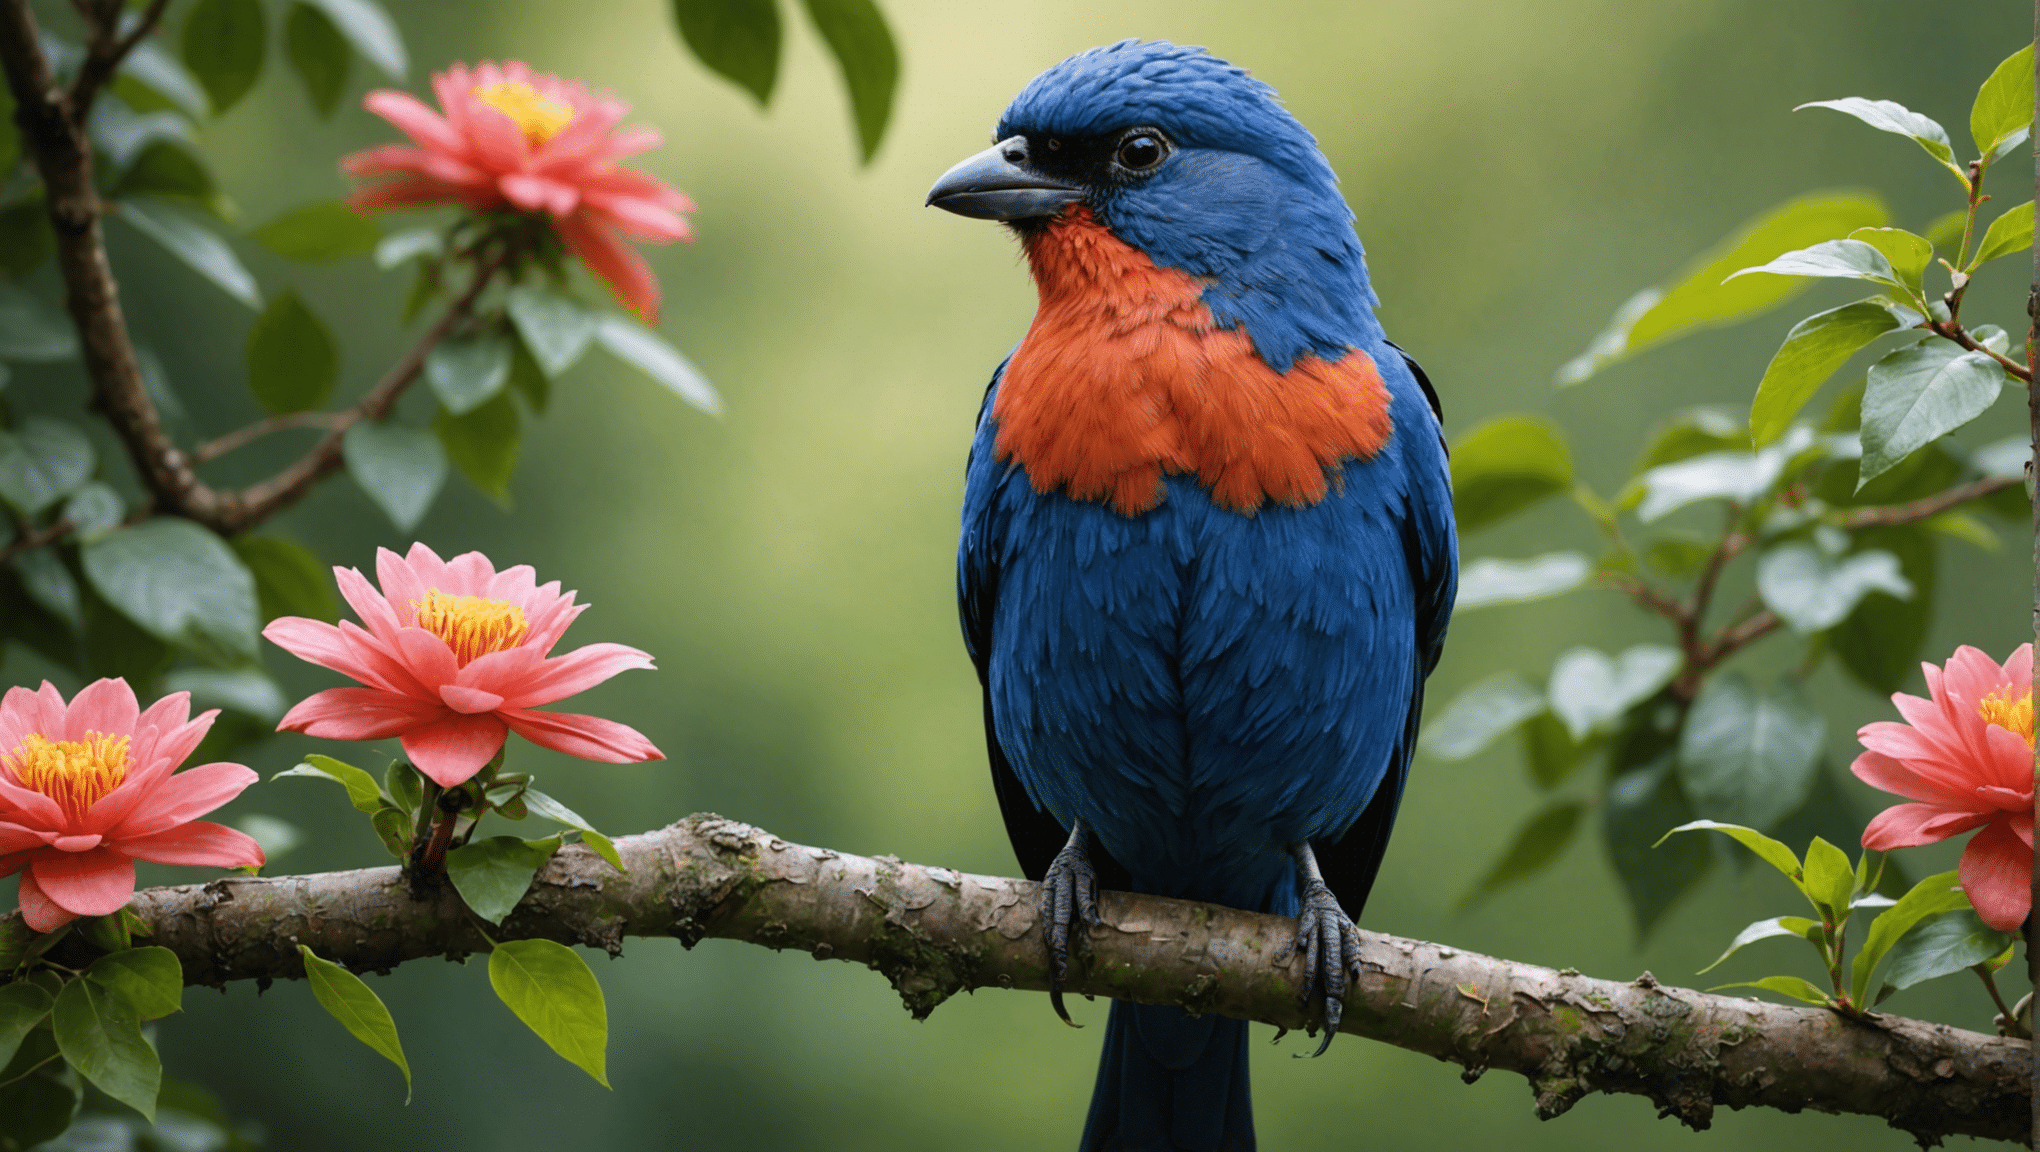 האם ציפורים מכוערות באמת יפות? גלה בחקר מרתק זה של יופיו החבוי של הטבע ואת האמת המפתיעה מאחורי היופי של ציפורים מכוערות לכאורה.